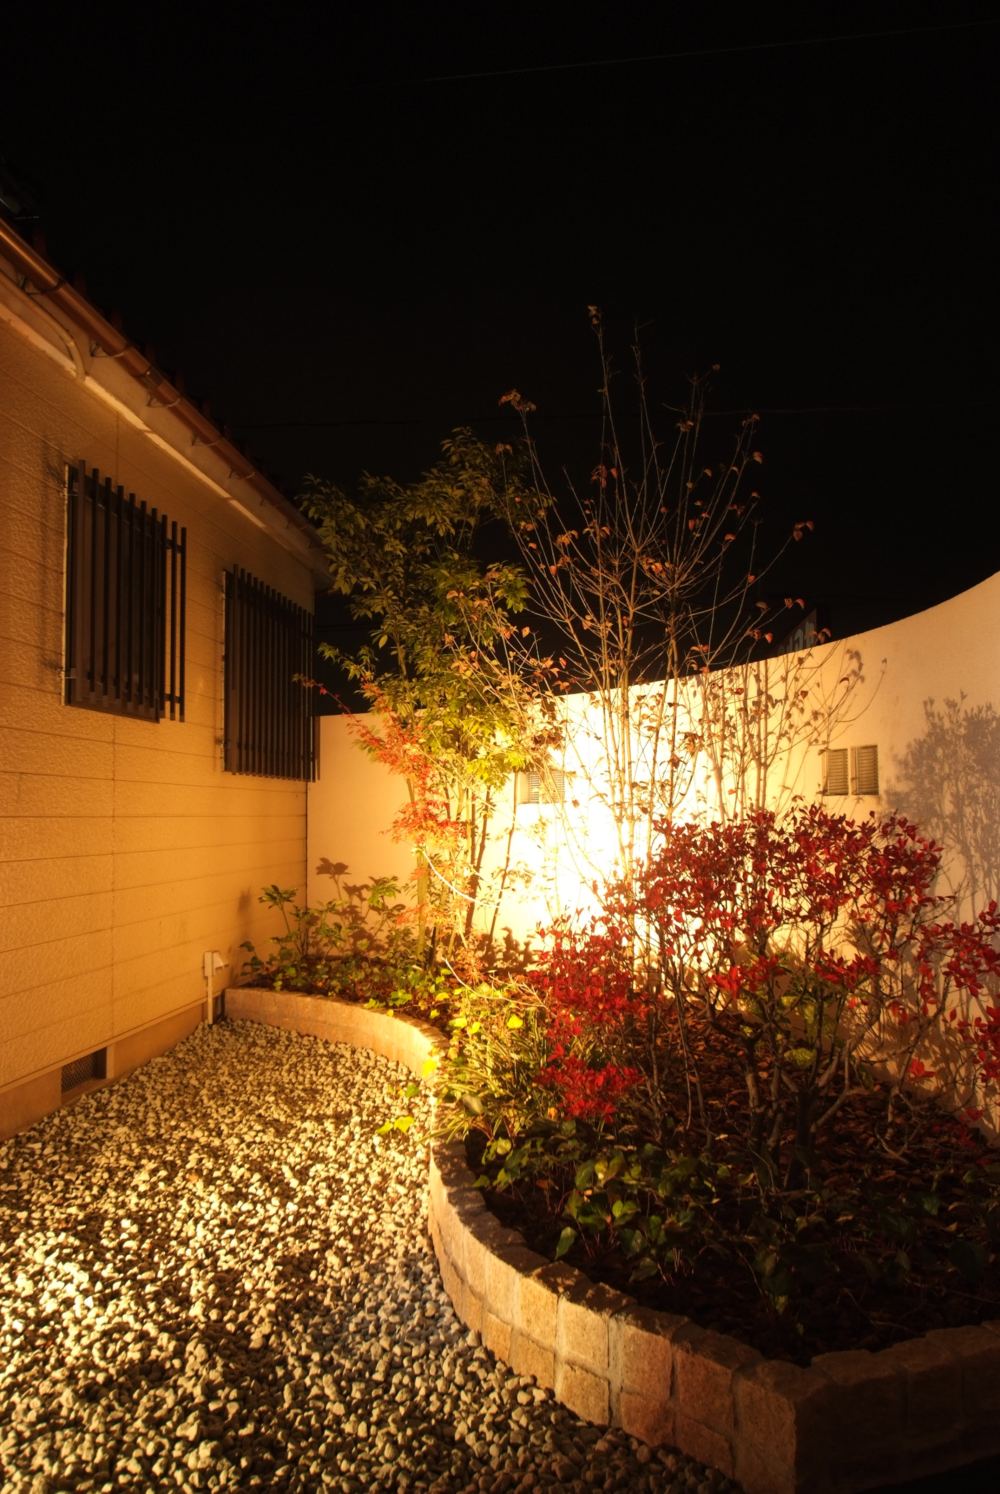 浴室前の壁の内側
植栽を施し、夜はアップライトで樹木を照らします、植栽スペースの前は防犯砂利を敷きました。